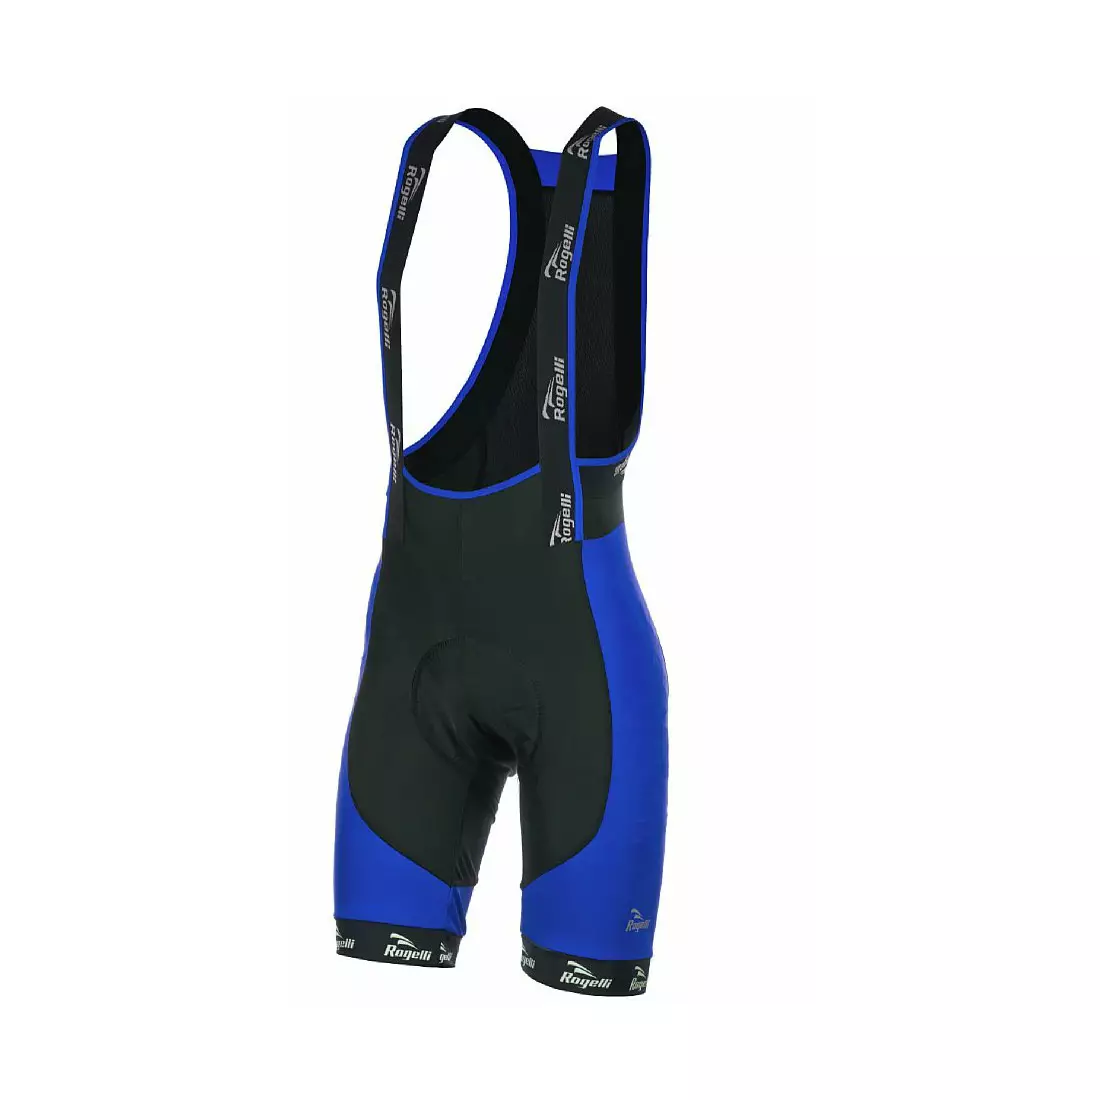 ROGELLI PORCARI - men's bib shorts, color: black and blue